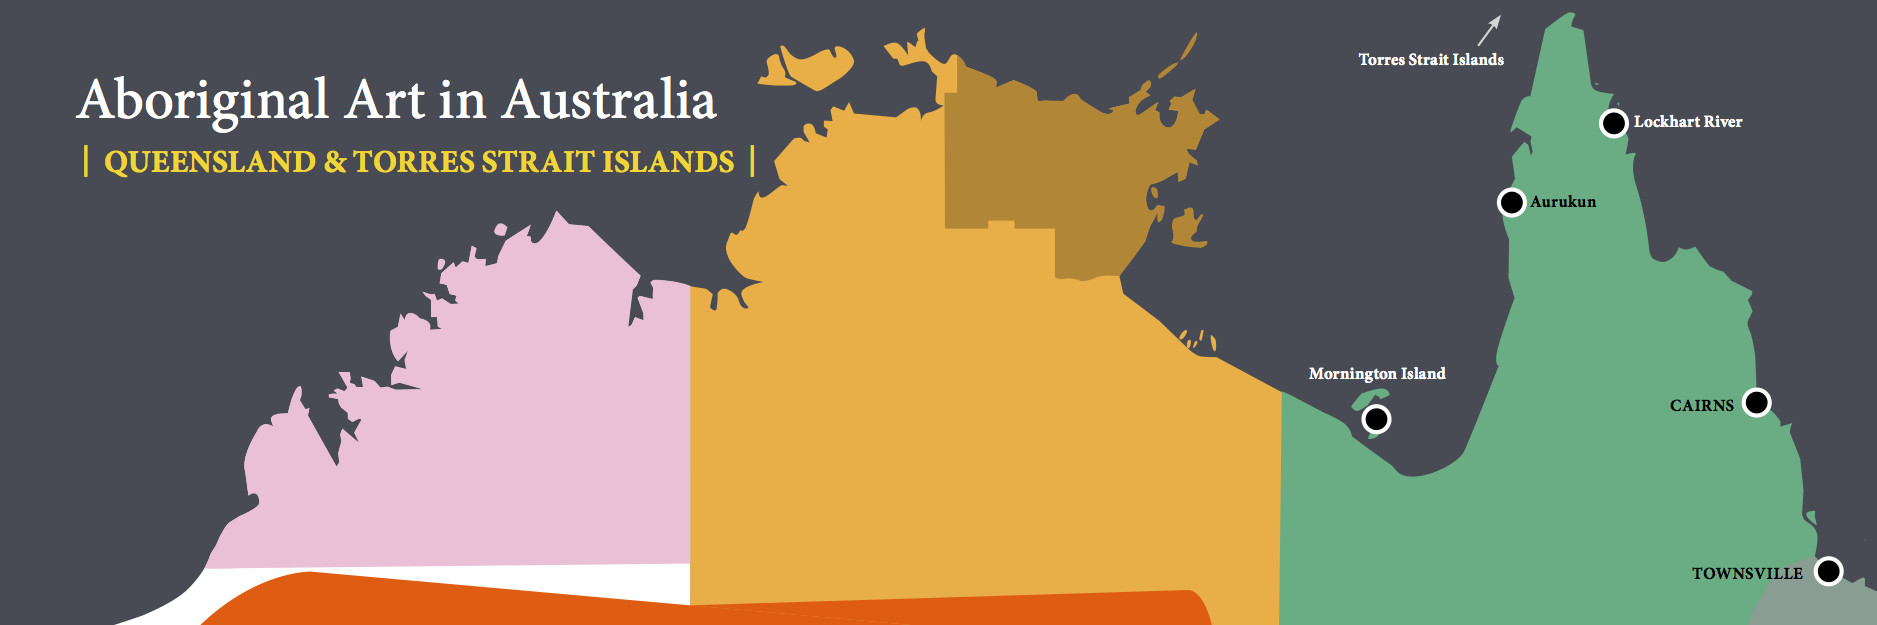 LDFA_Website Maps_8 copy - 5 Queensland & Torres Strait